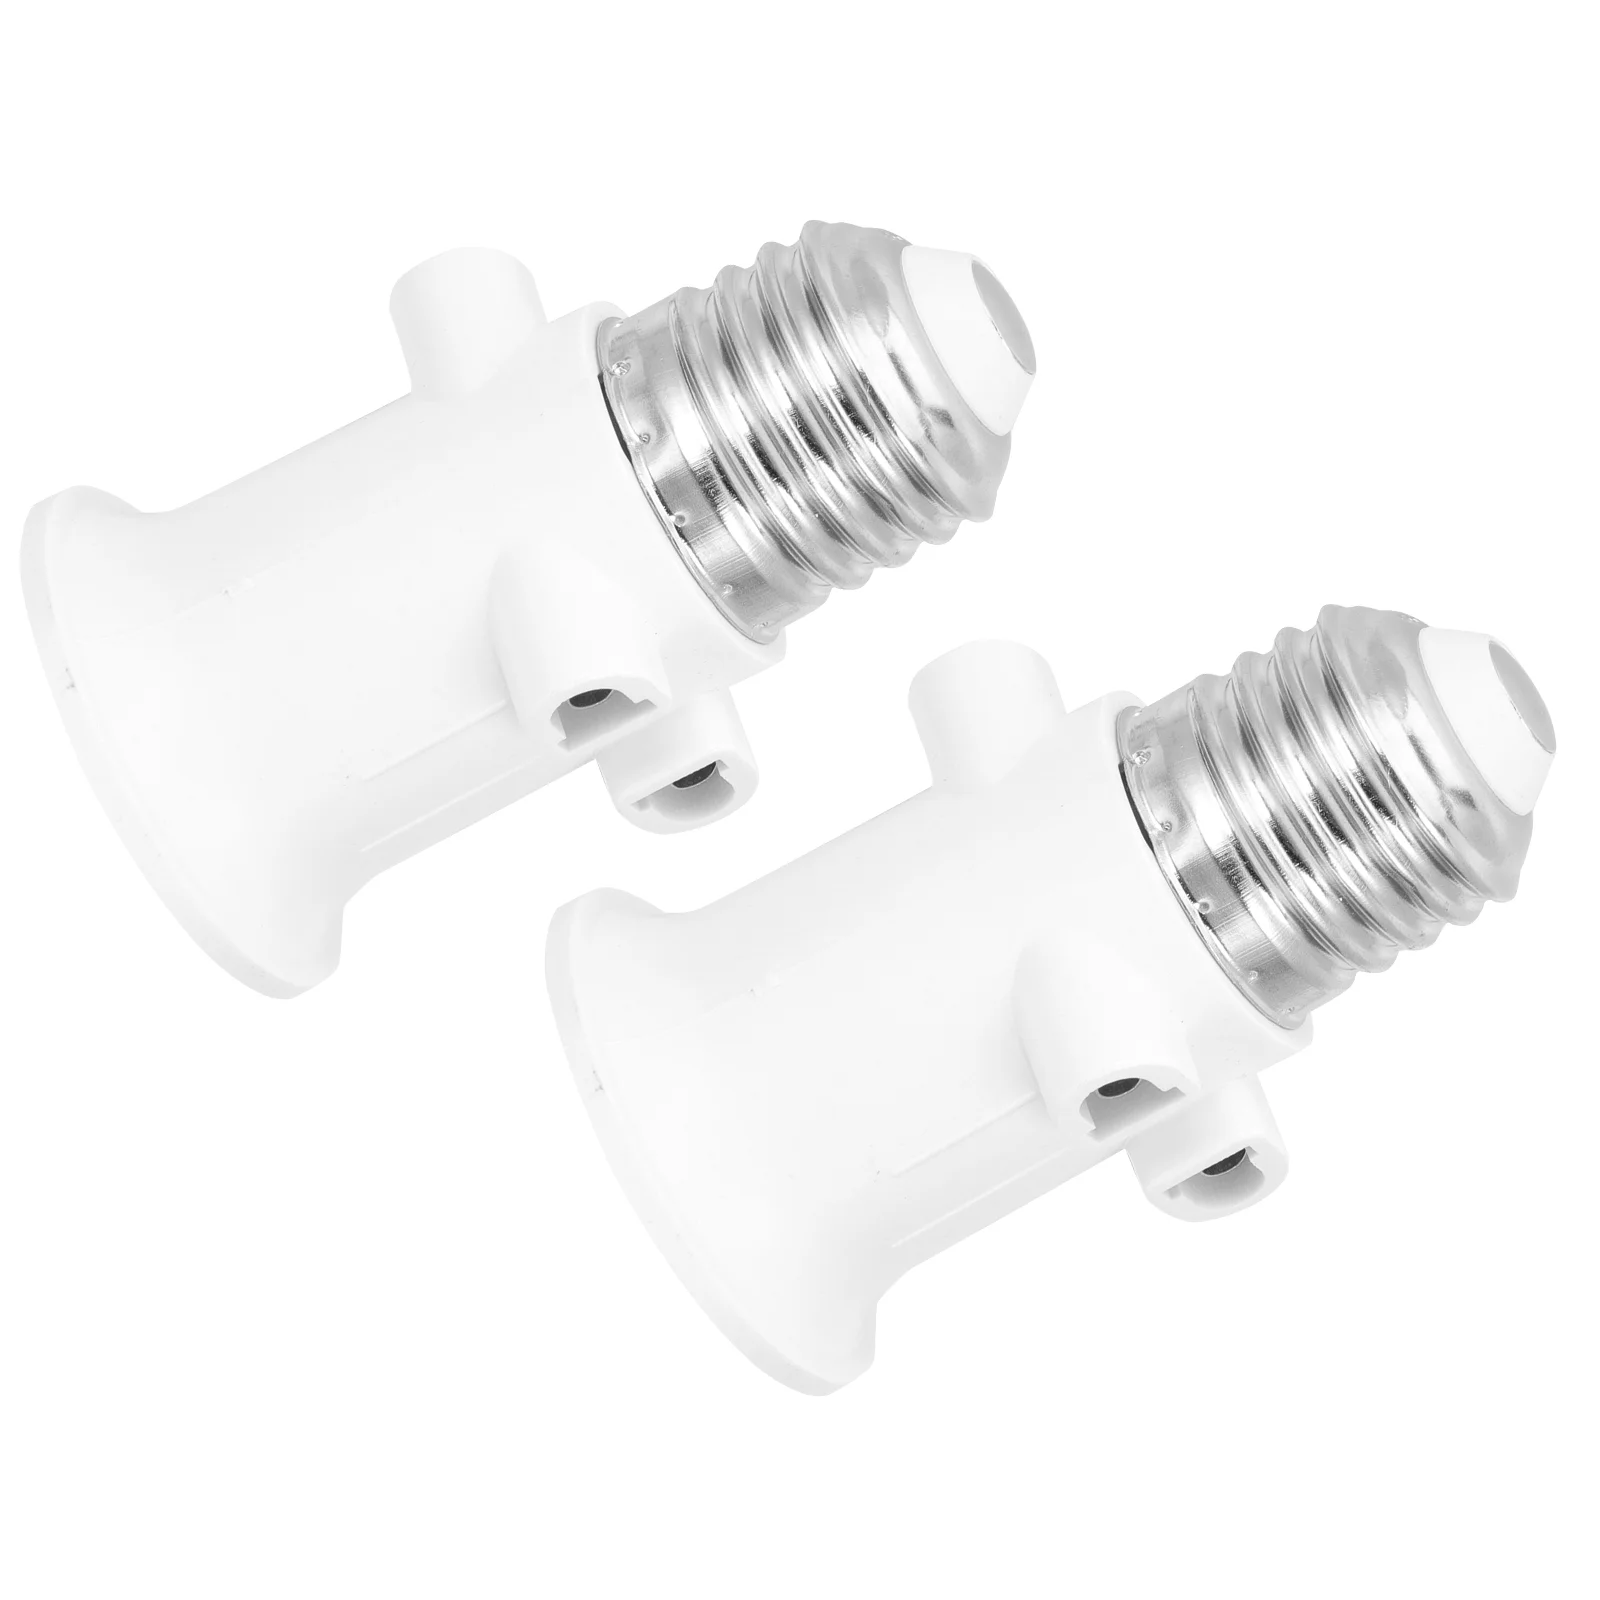 

2 Pcs Light Bulb Socket Lamp Holder Plug Adapter Outlet Splitter Converter Ceramics E27